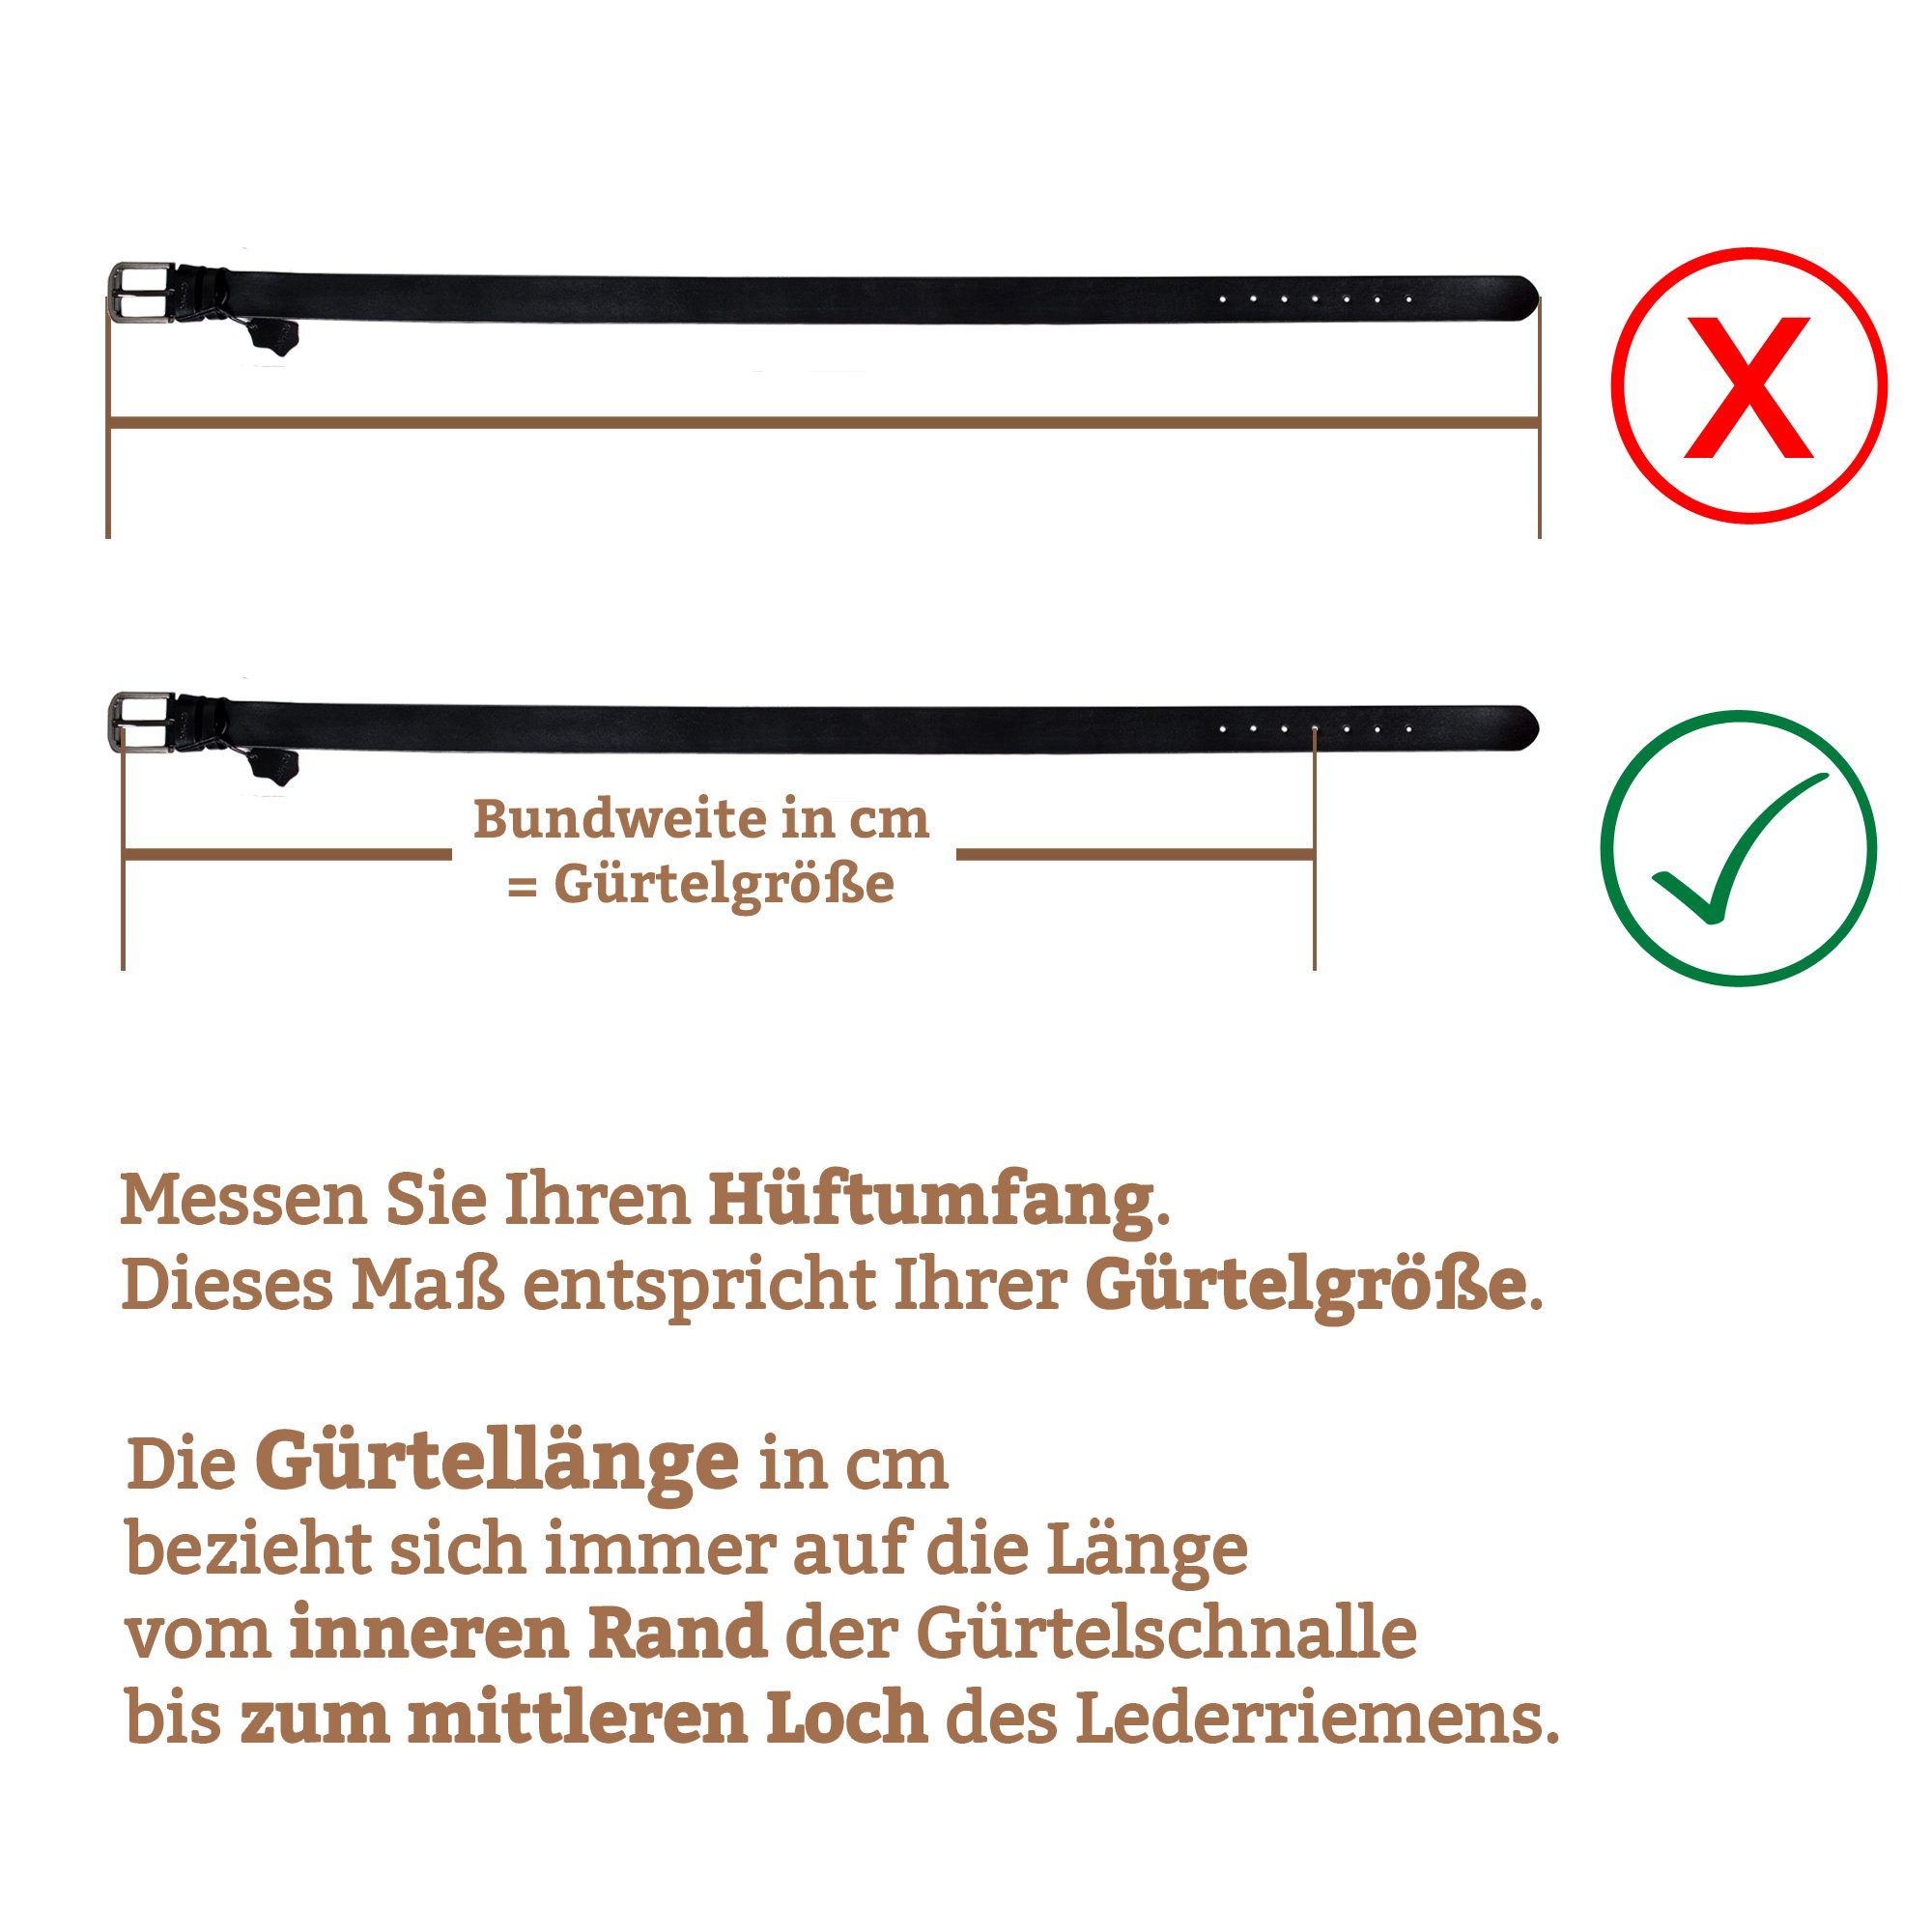 Made Braun wunderbarer Ledergürtel in mit Carbon Carbon Design Germany Farben) Schließe klassisch Geschenkbox edles mit Cartvelli Ledergürtel (3 Herren